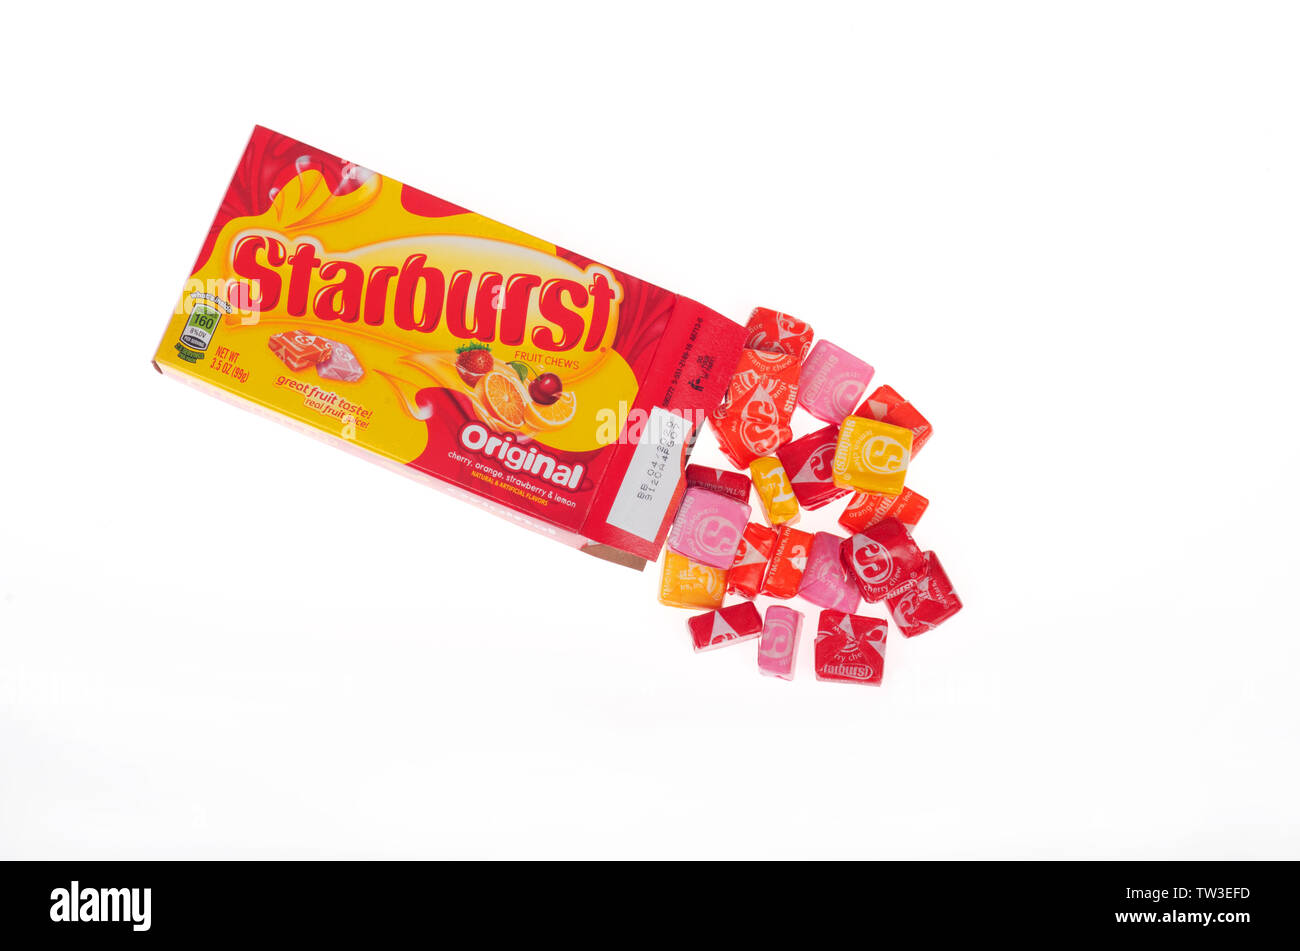 Starburst candy Box mit verpackt Bonbons Ausfließen von Mars Wrigley auf weißem Hintergrund geöffnet Stockfoto